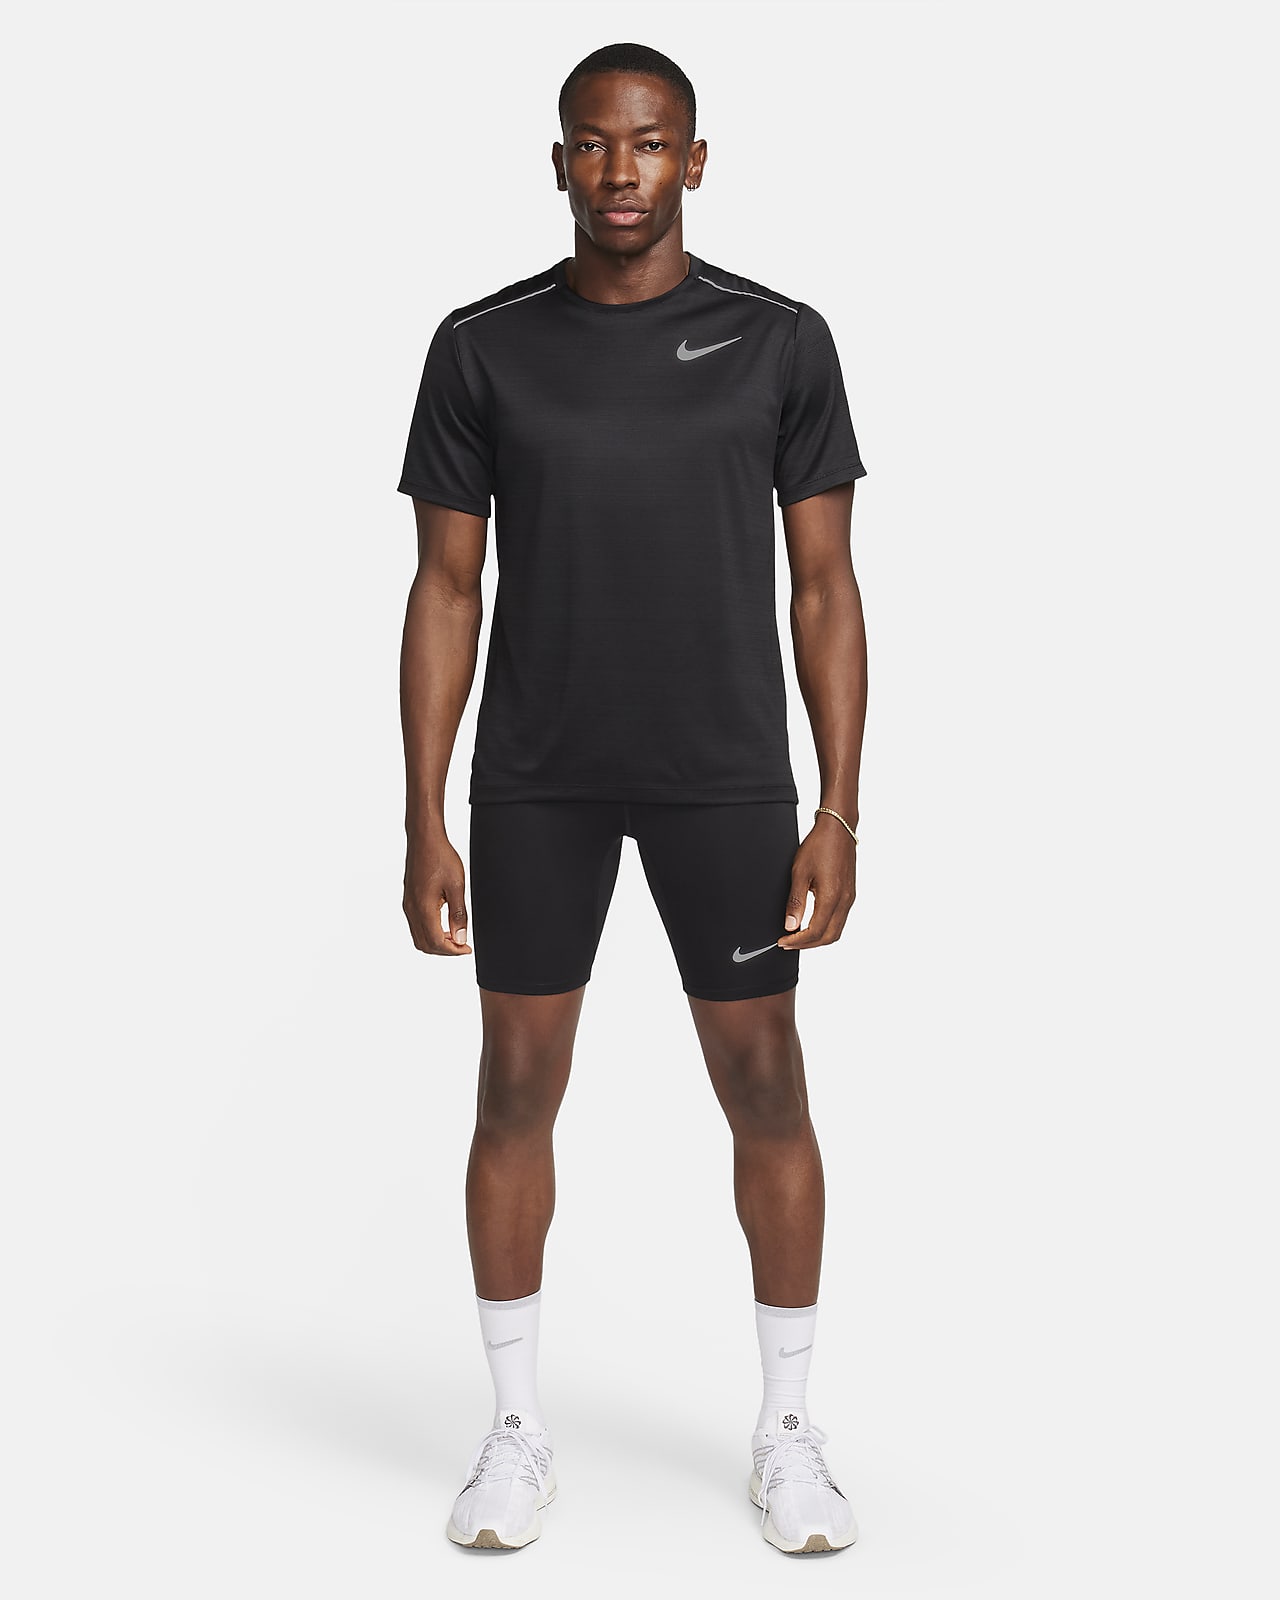 Men's Nike Dri-FIT Fast Half Tight - Black